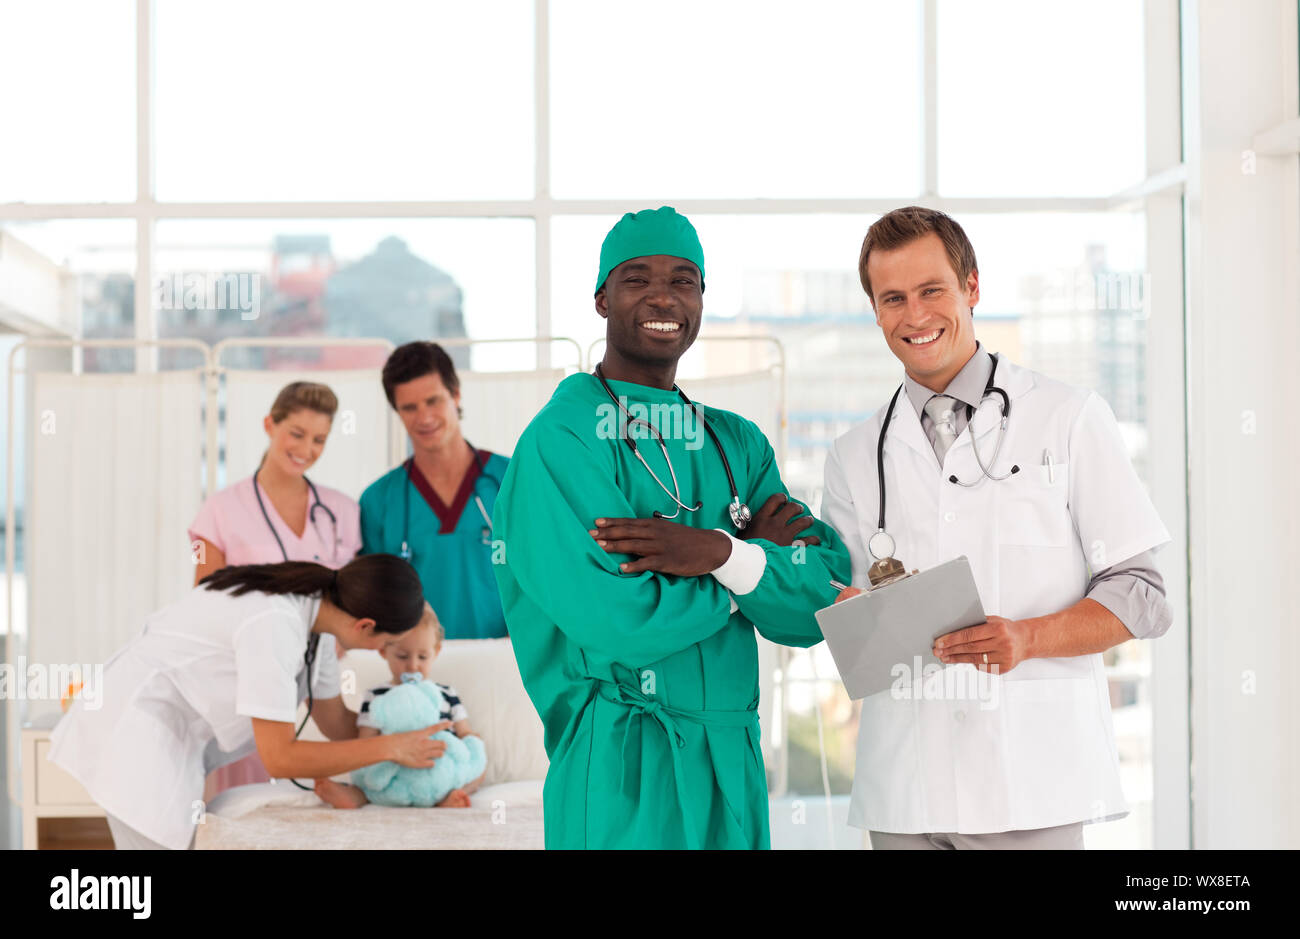 Porträt eines Arztes mit seinem Team im Hintergrund Stockfoto